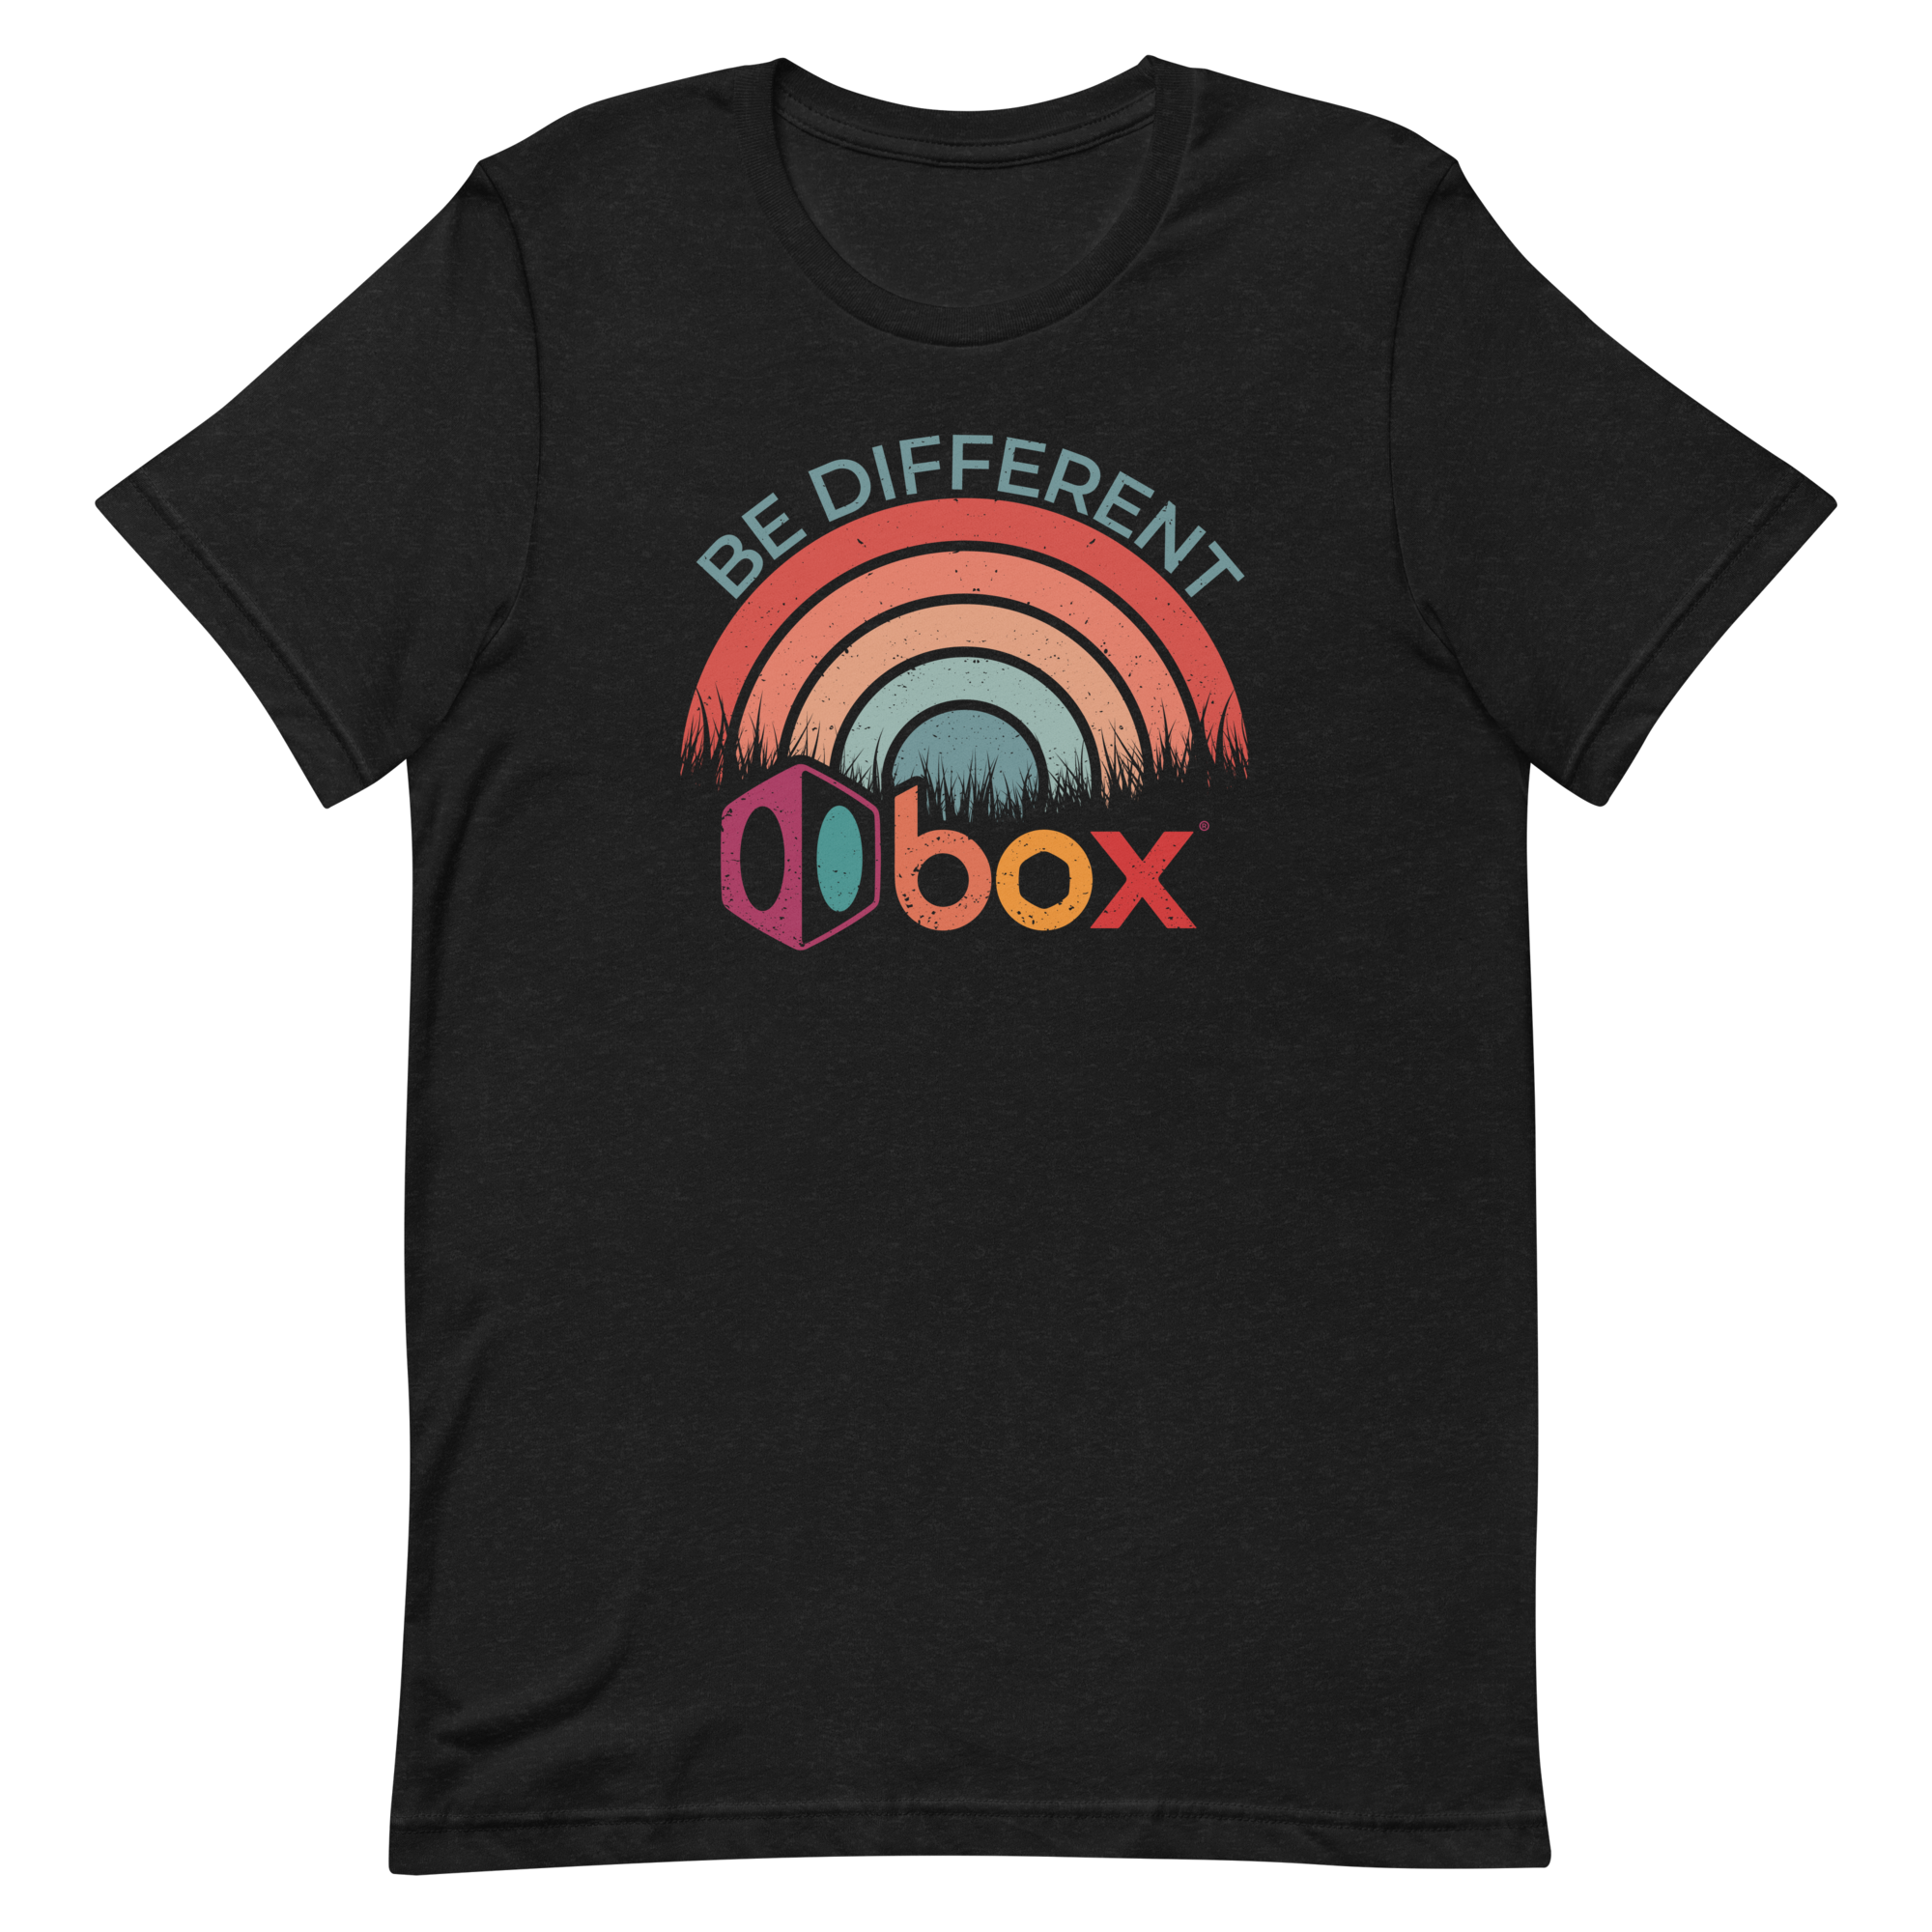 Box One Retro-Inspired T-Shirt